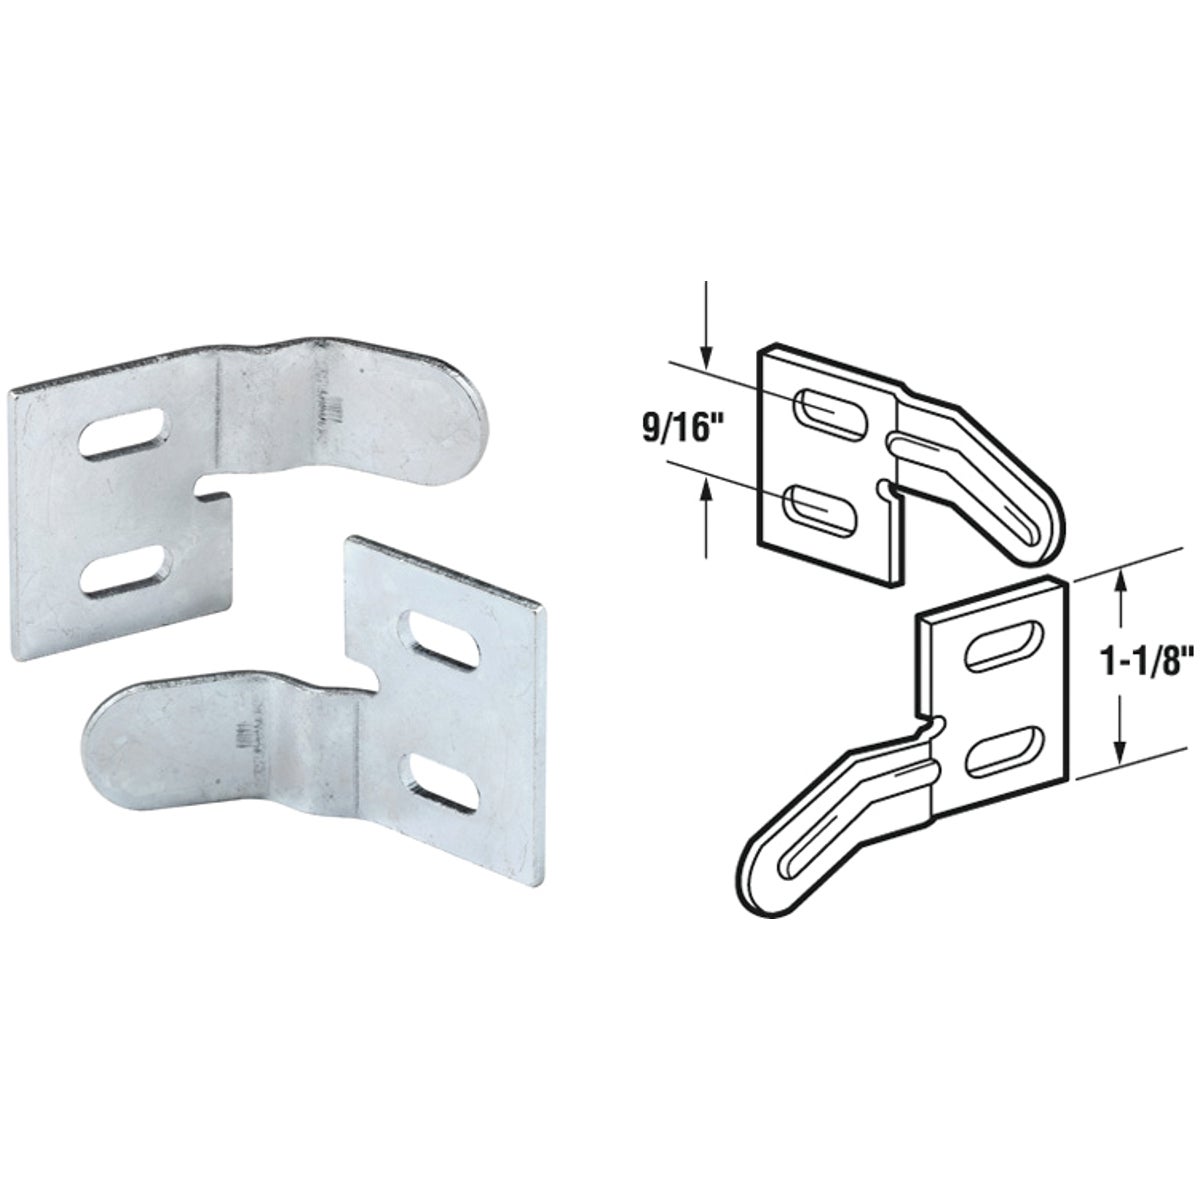 Item 236446, Steel bi-fold aligner for bi-fold doors.